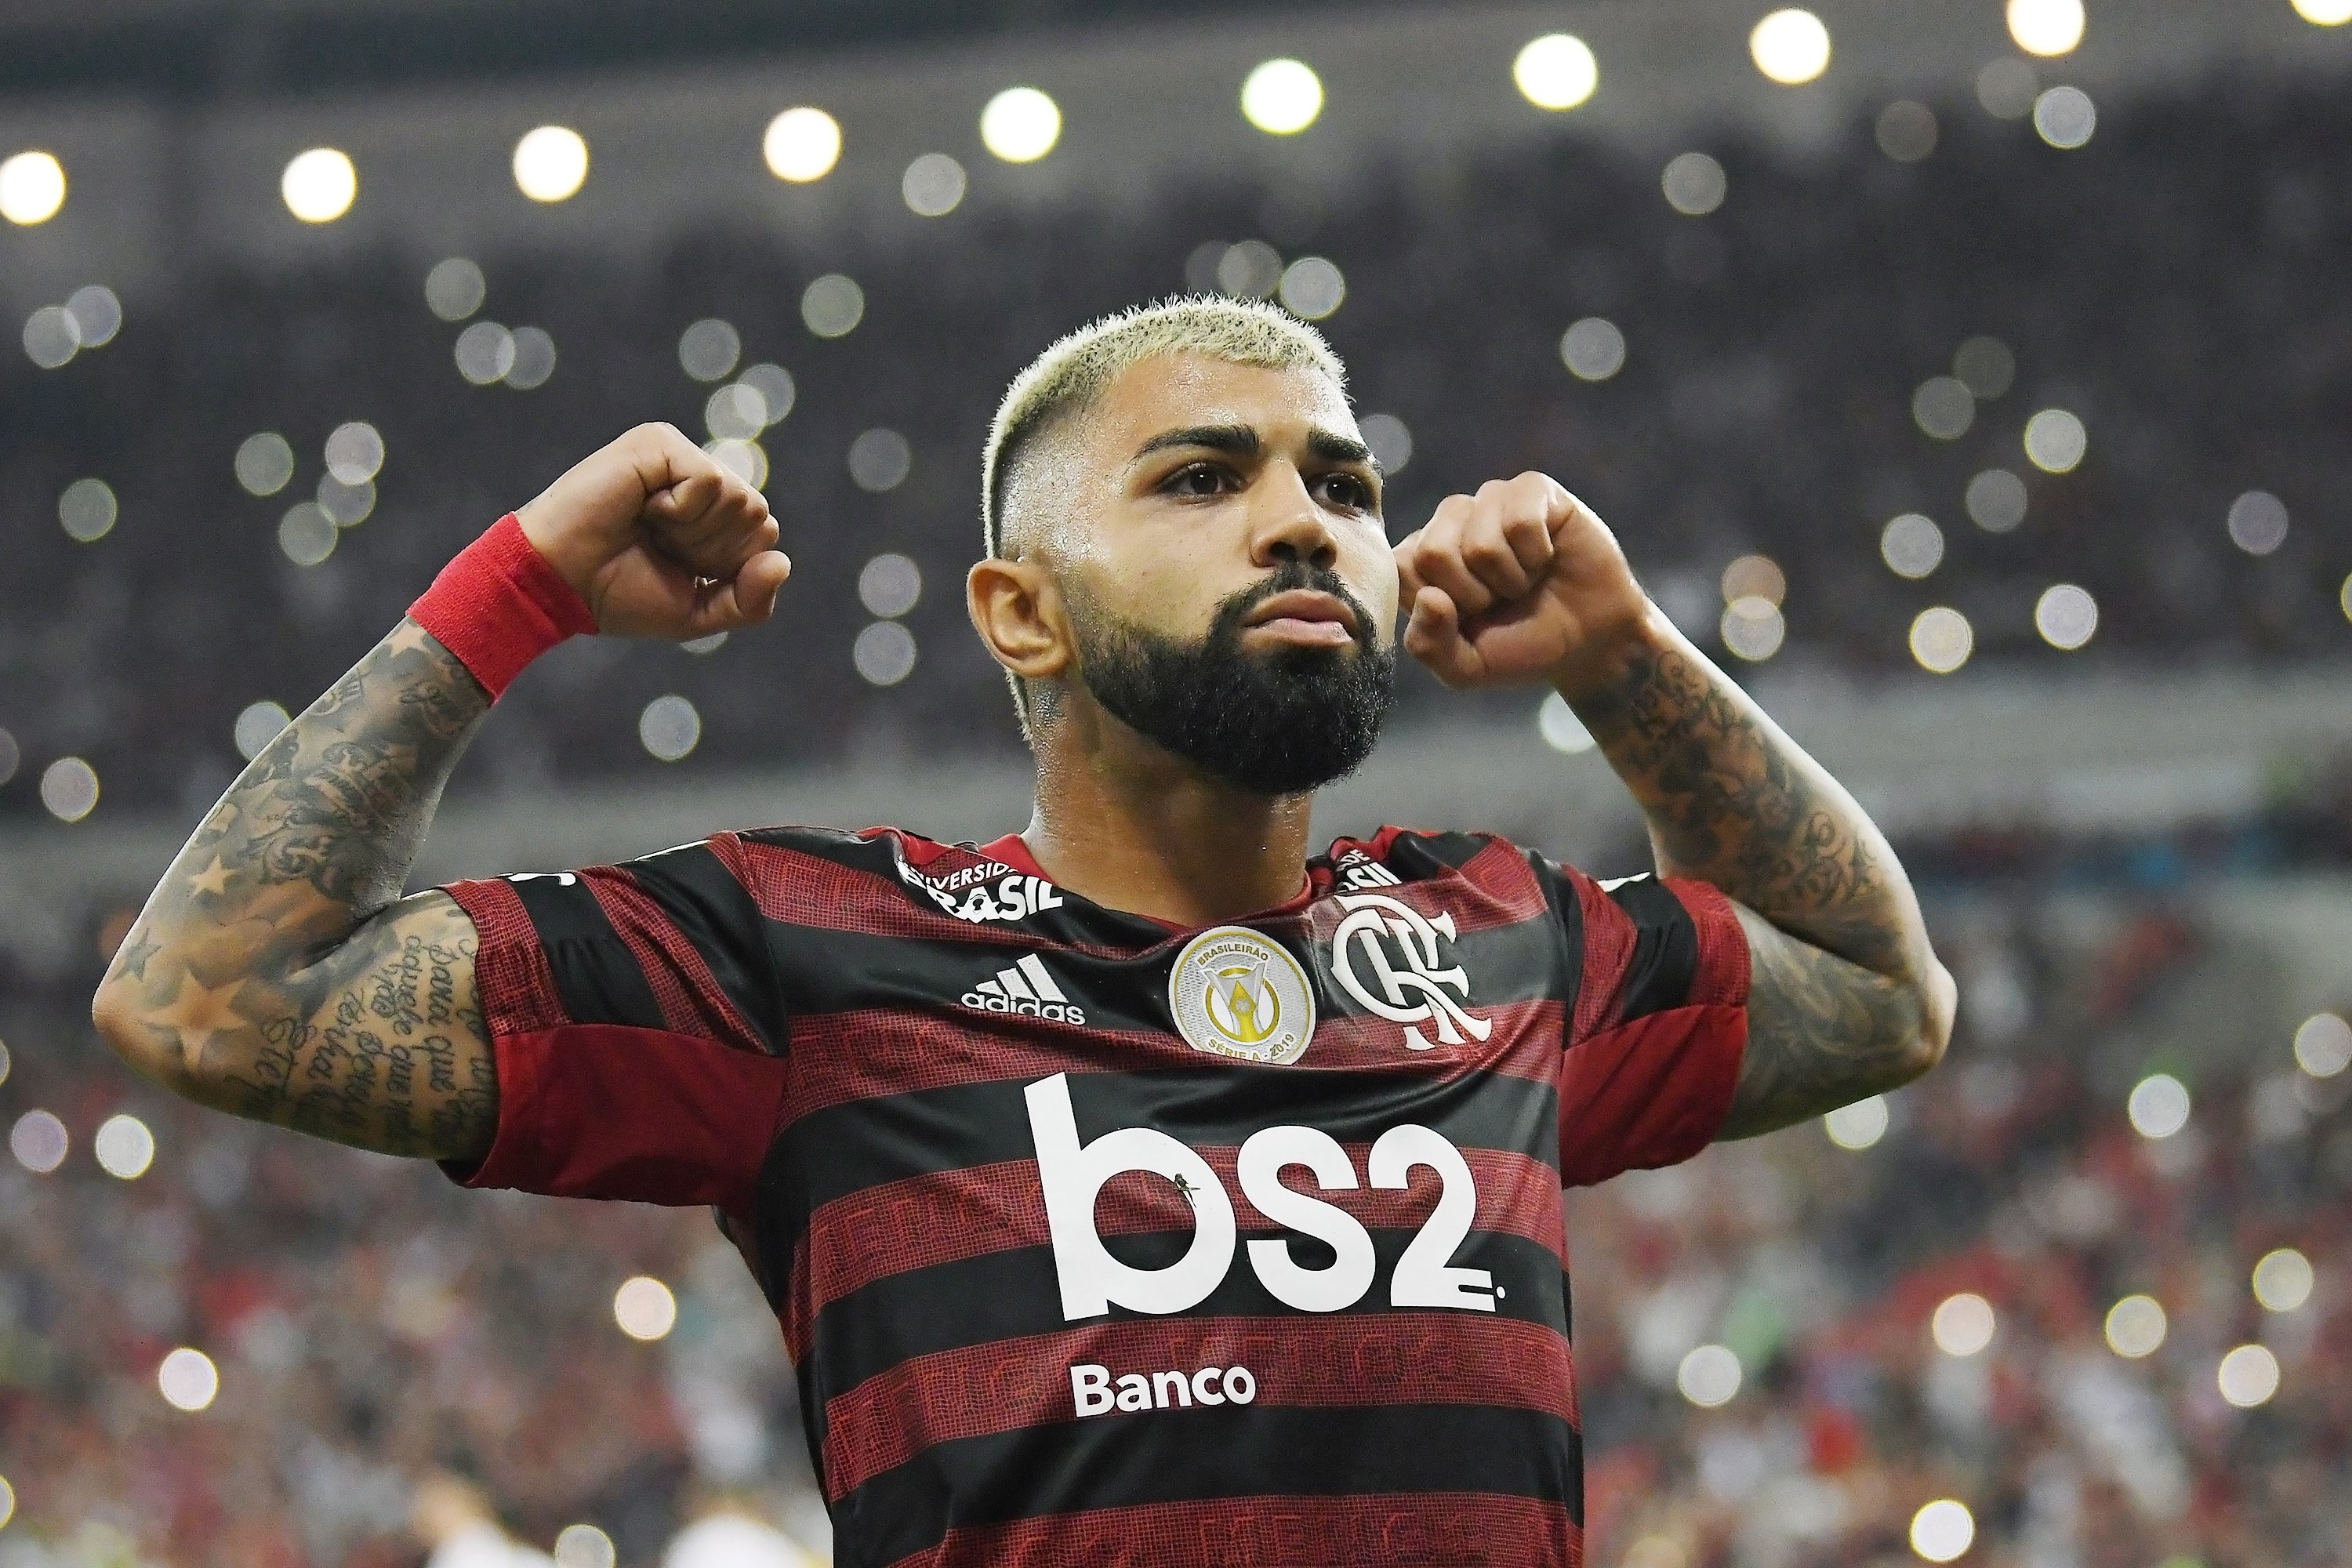 Patrocínio do Banco BS2 é aprovado no Flamengo. Veja os detalhes